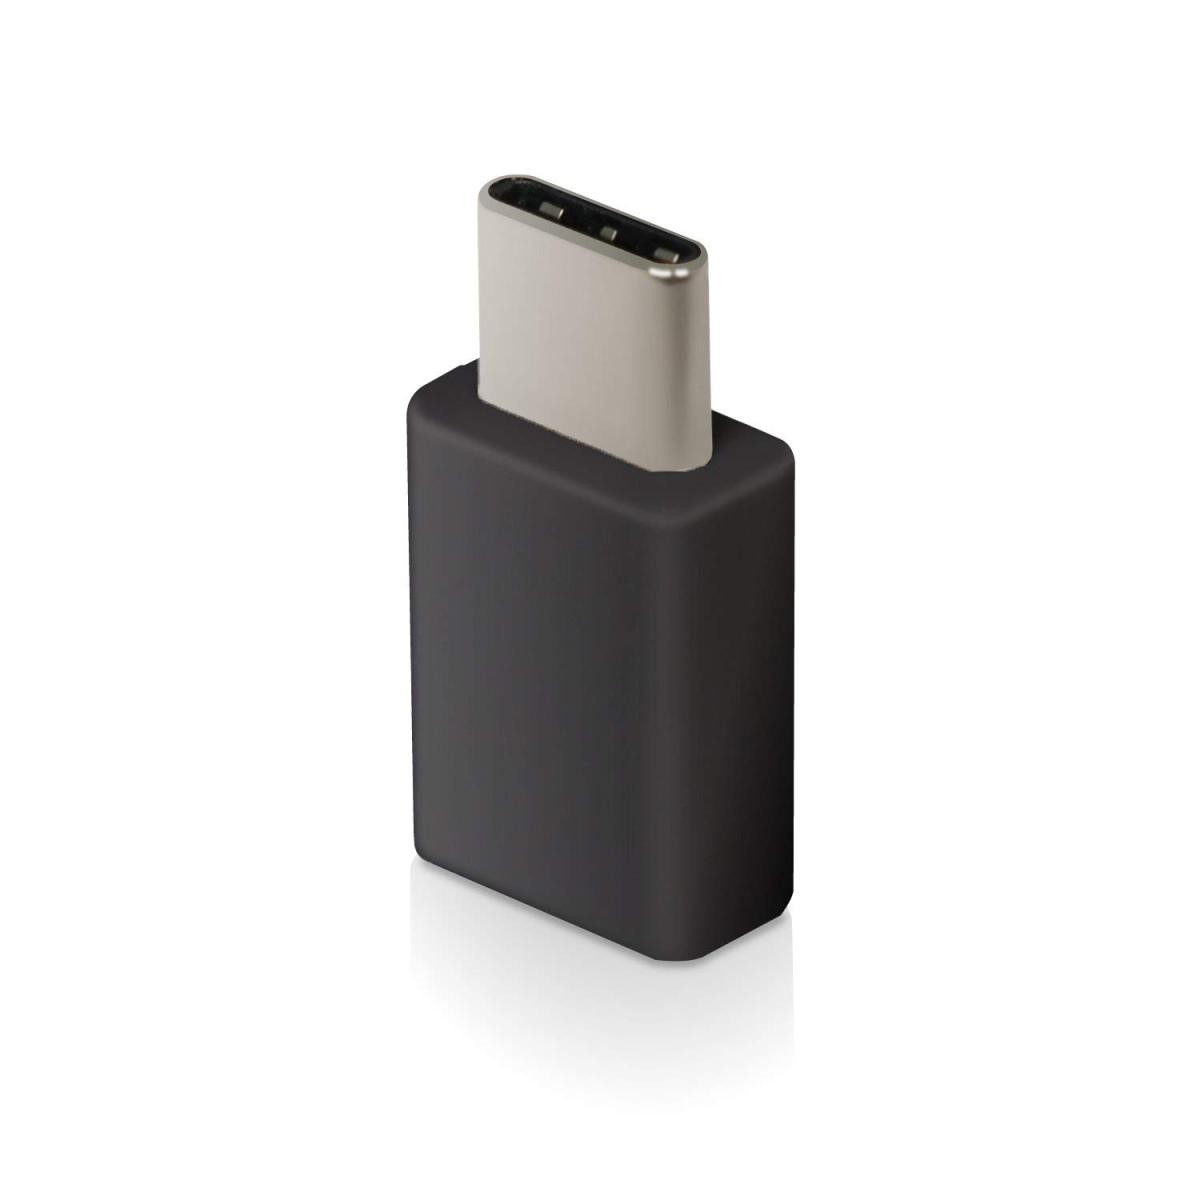 エレコム USB TYPE C 変換アダプタ 3A出力で超急速充電 [micro-B端子をUSB Type-C端子に変換] ブラック MPA-MBFCMADNBK